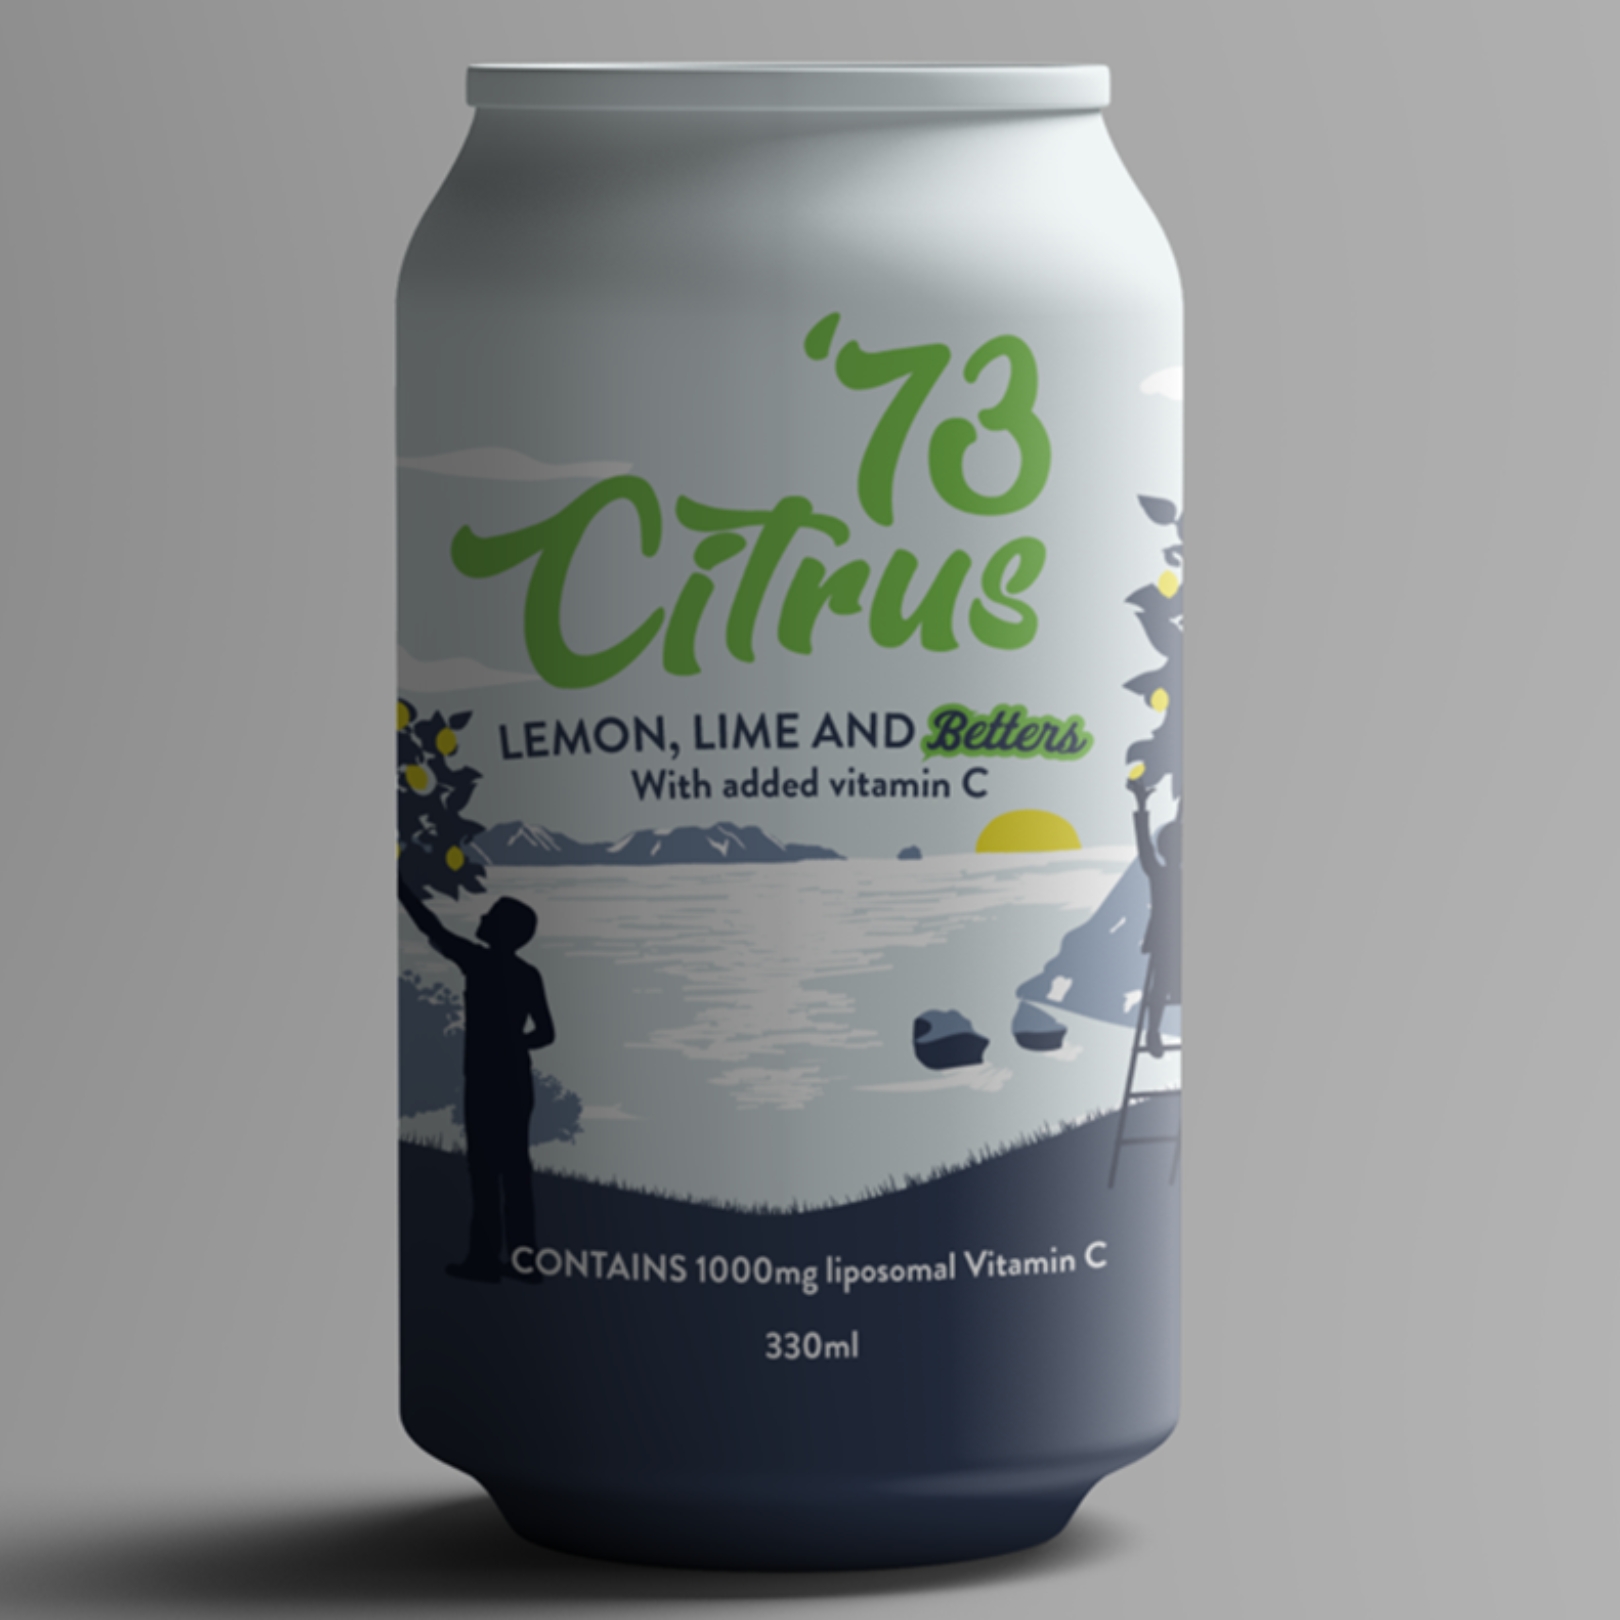 Buy 12 Pack - Sparkling Lemon & Lime Drink Online NZ